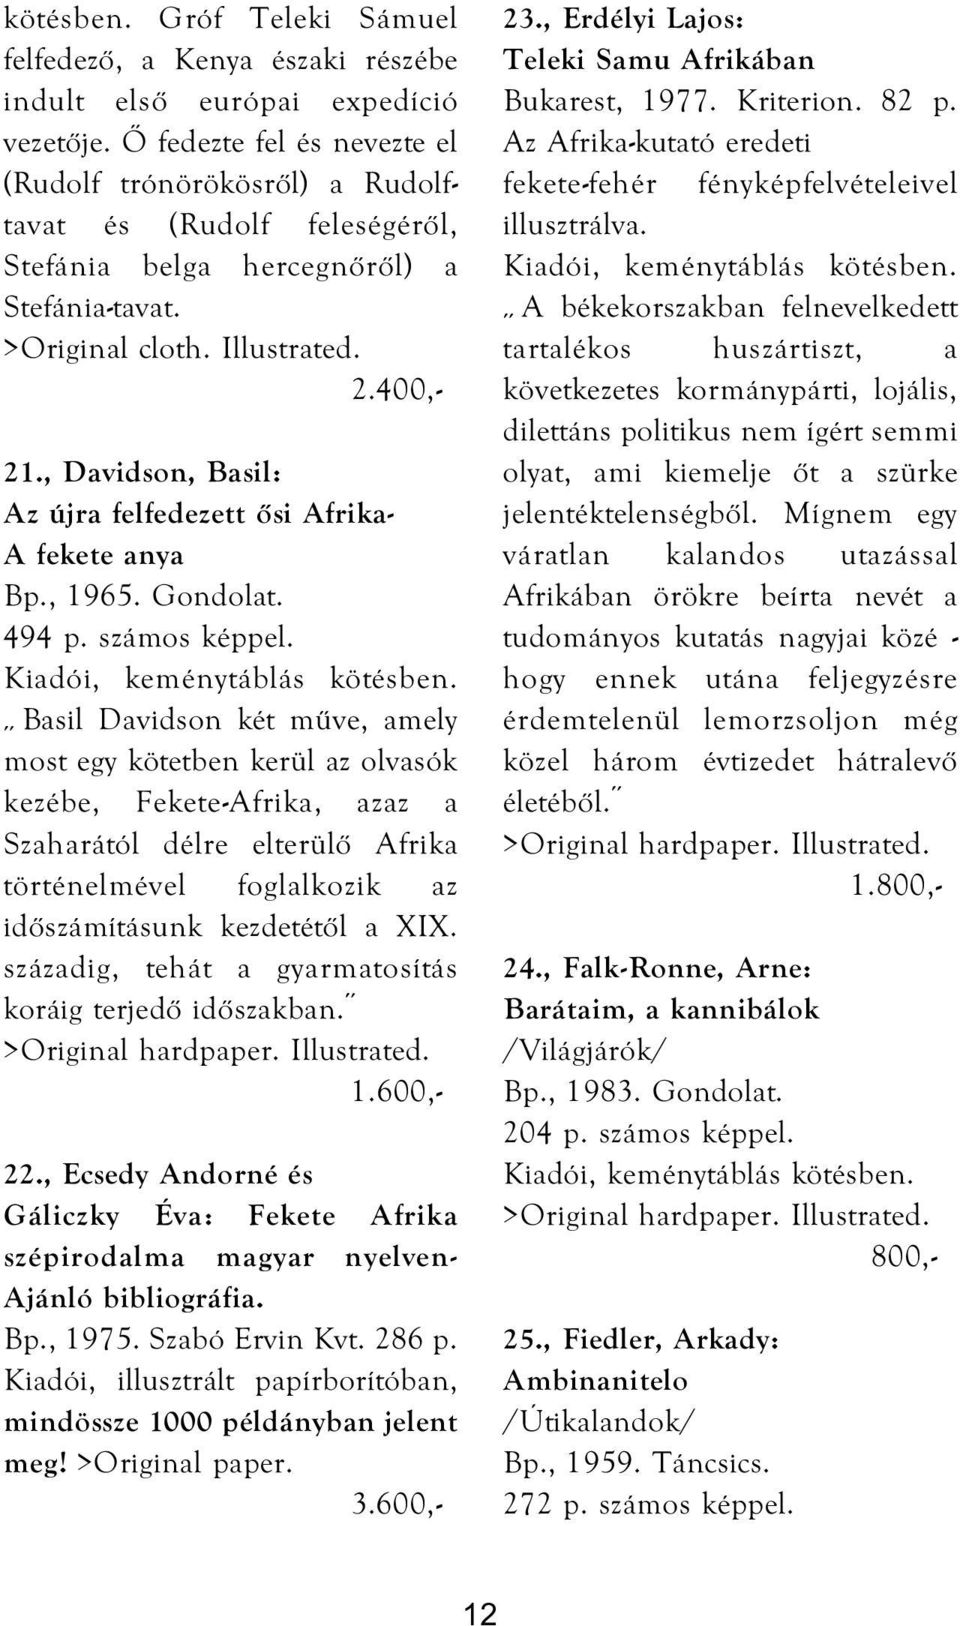 , Davidson, Basil: Az újra felfedezett ősi Afrika- A fekete anya Bp., 1965. Gondolat. 494 p. számos képpel. Kiadói, keménytáblás kötésben.